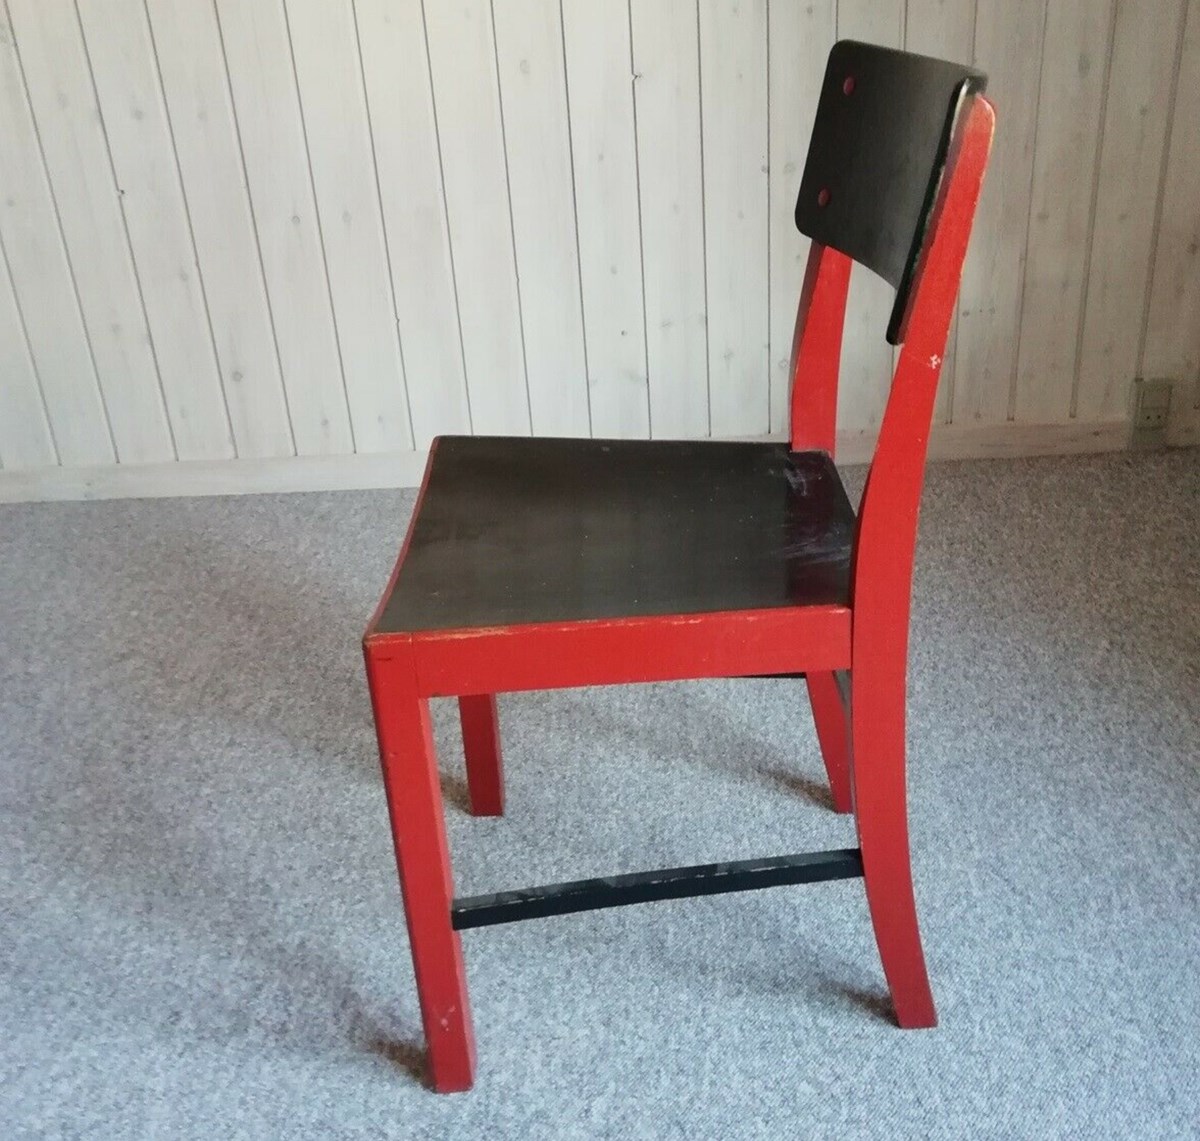 120 kroner skal du slippe for denne sorte og røde stol, som Karen, der bor i Pandrup, nordvest fra Aalborg, har til salg.